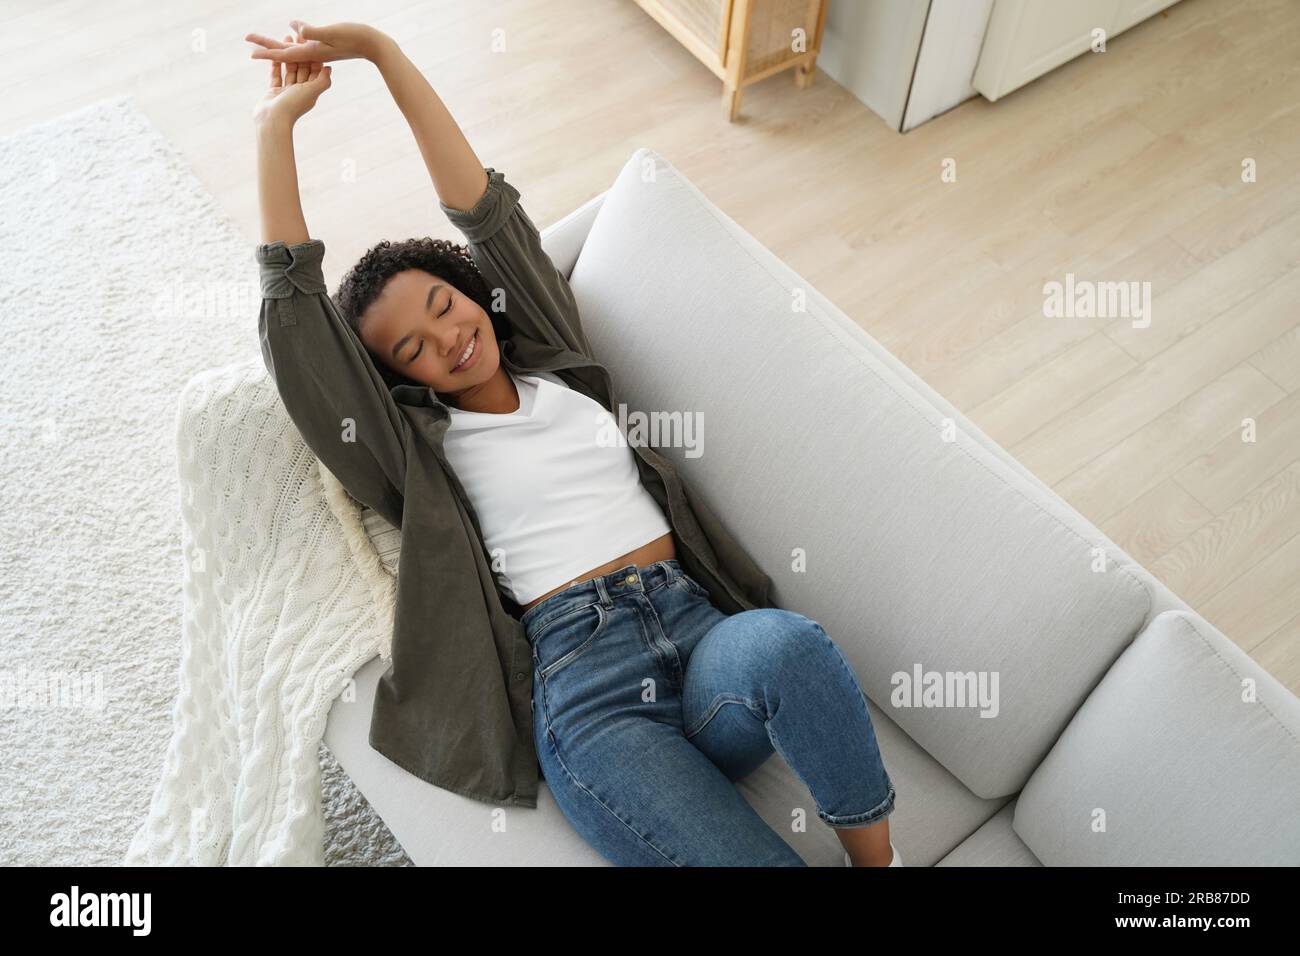 La ragazza sorridente si allunga dopo un pisolino sul comodo divano a casa. Un adolescente felice si rilassa, godendosi una tranquilla pausa durante il fine settimana. Foto Stock